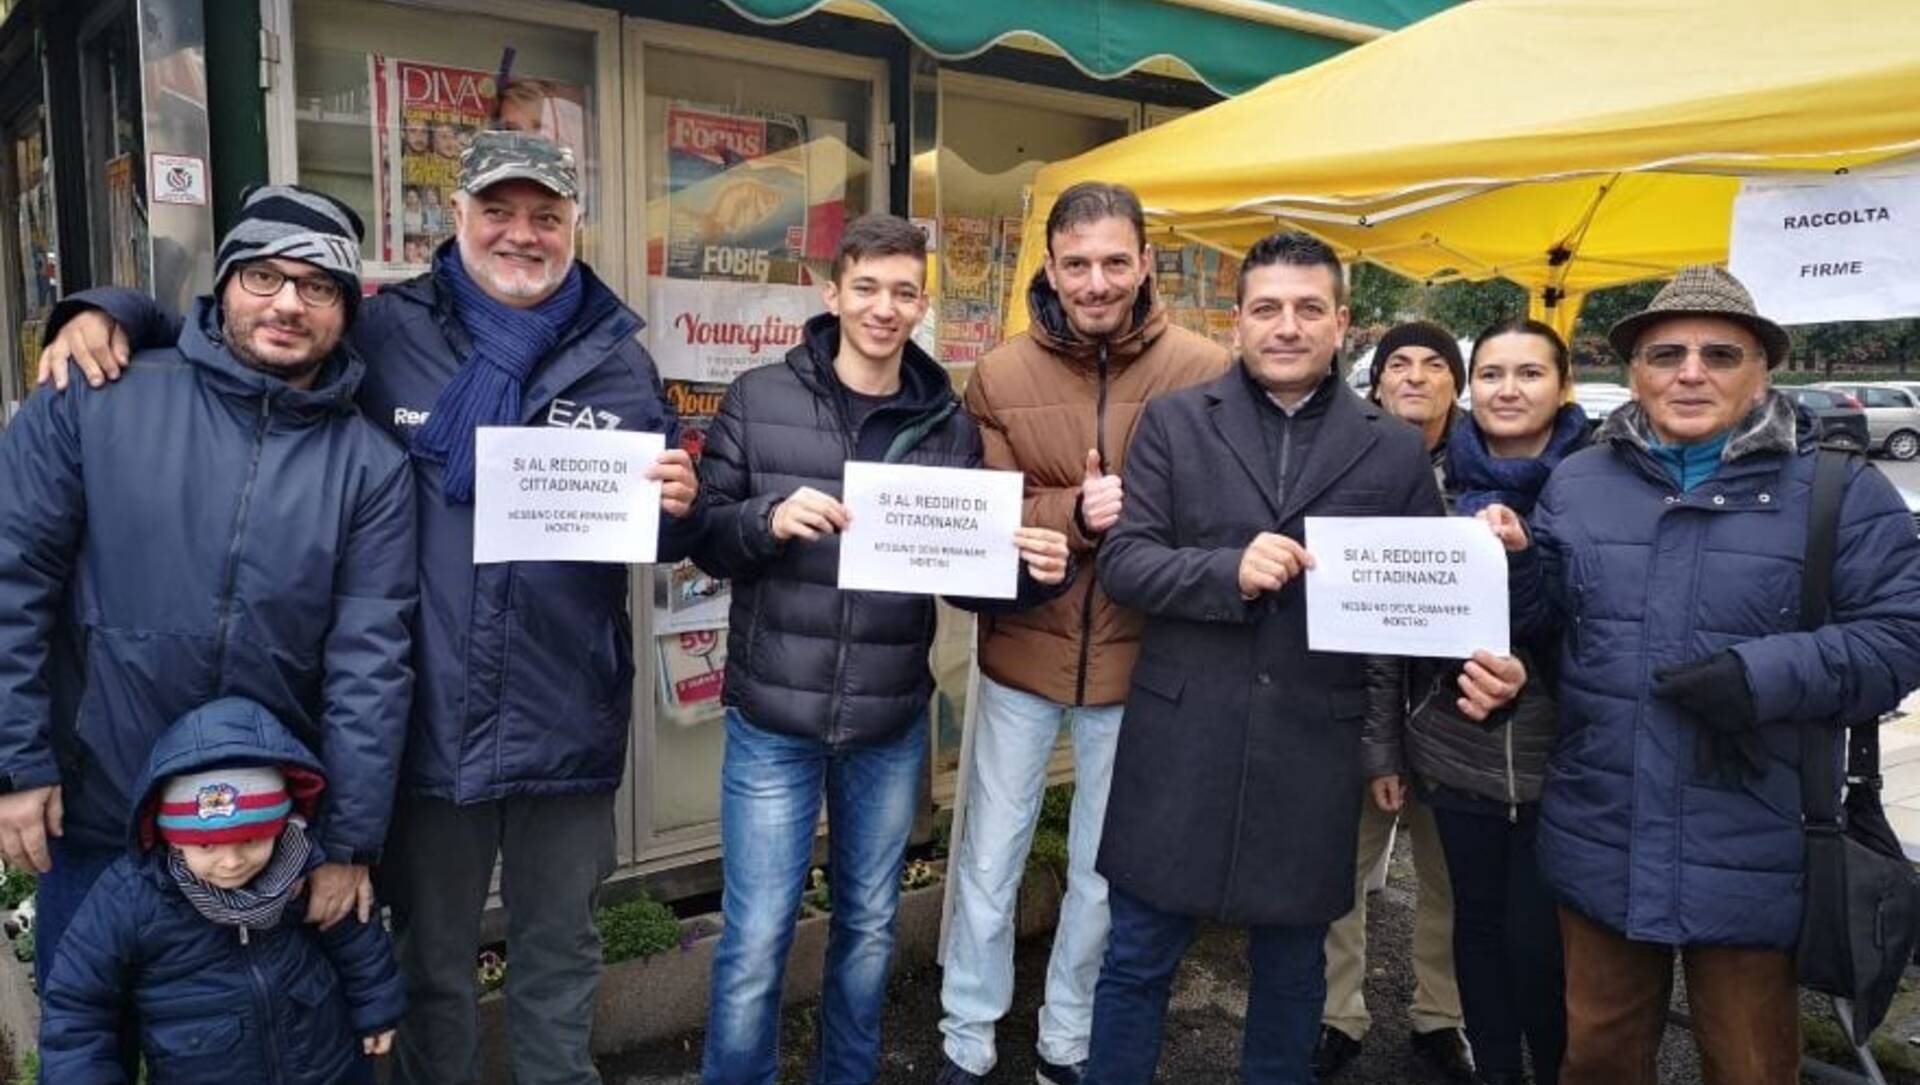 M5s Limbiate lancia una raccolta firme contro l’invio delle armi in Ucraina e per la sanità pubblica